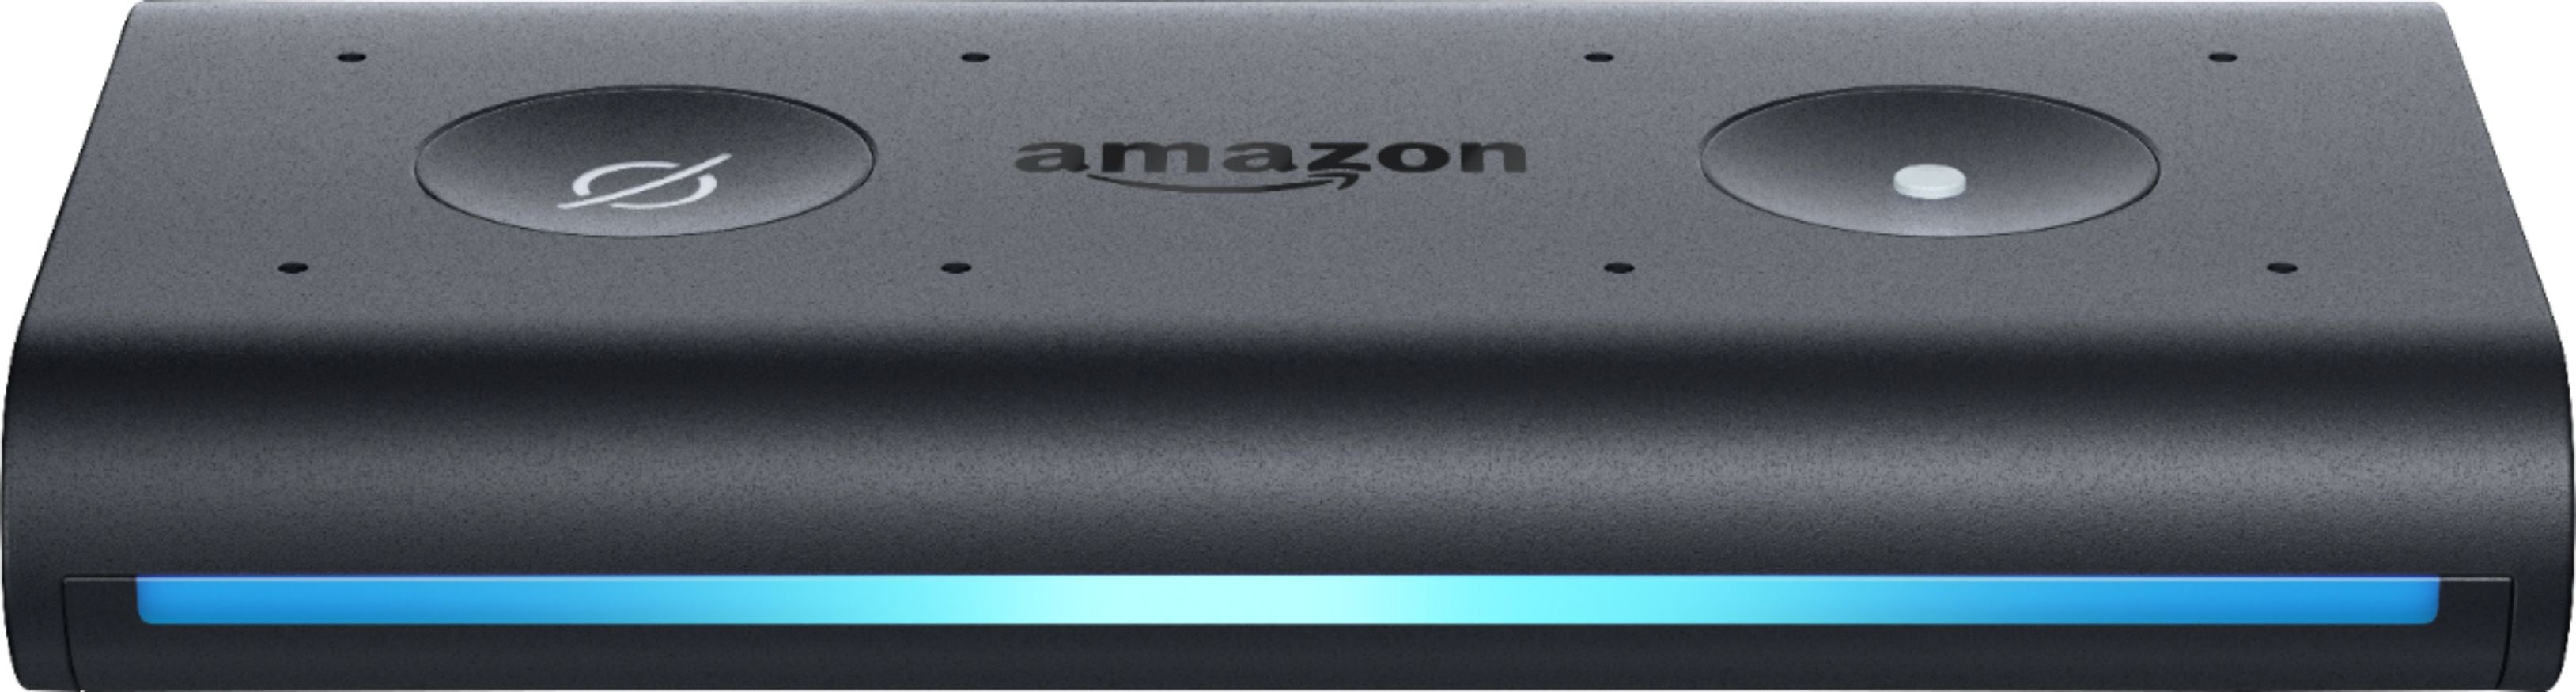 Amazon Echo Auto Smart Speaker + Smart Plug + Cat5 Cable + Batteries